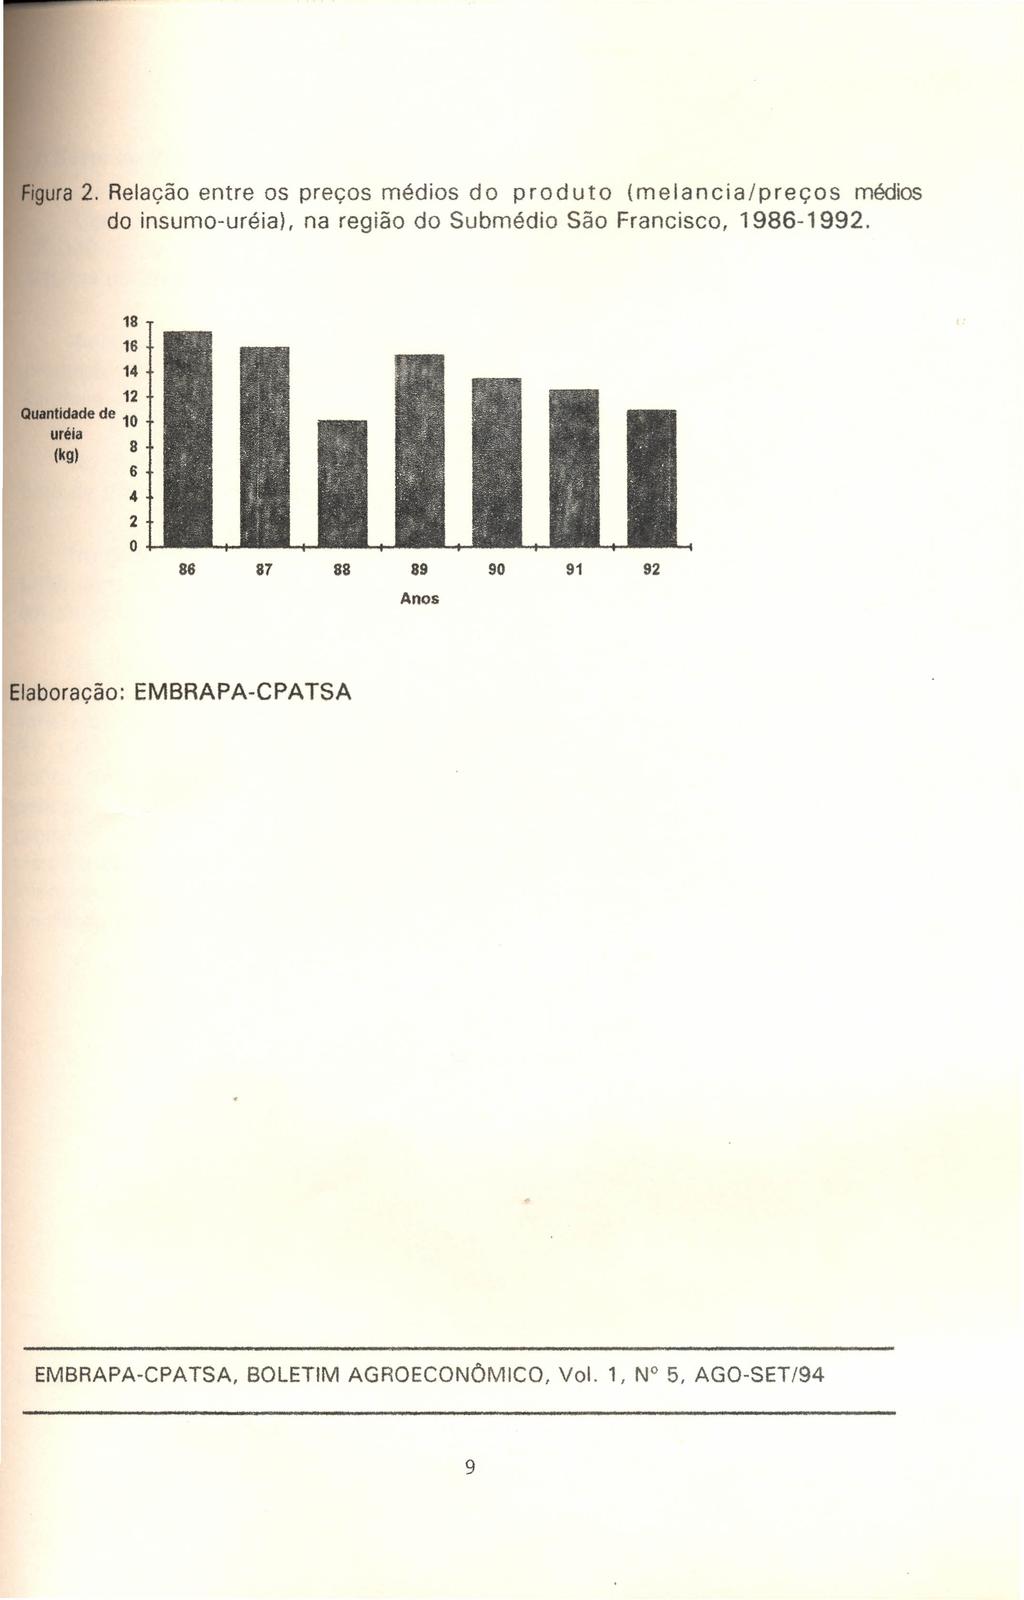 Figura2. Relação entre os preços médios do produto (melancia/preços médios do insumo-uréia), na região do Submédio São Francisco, 1986-1992.